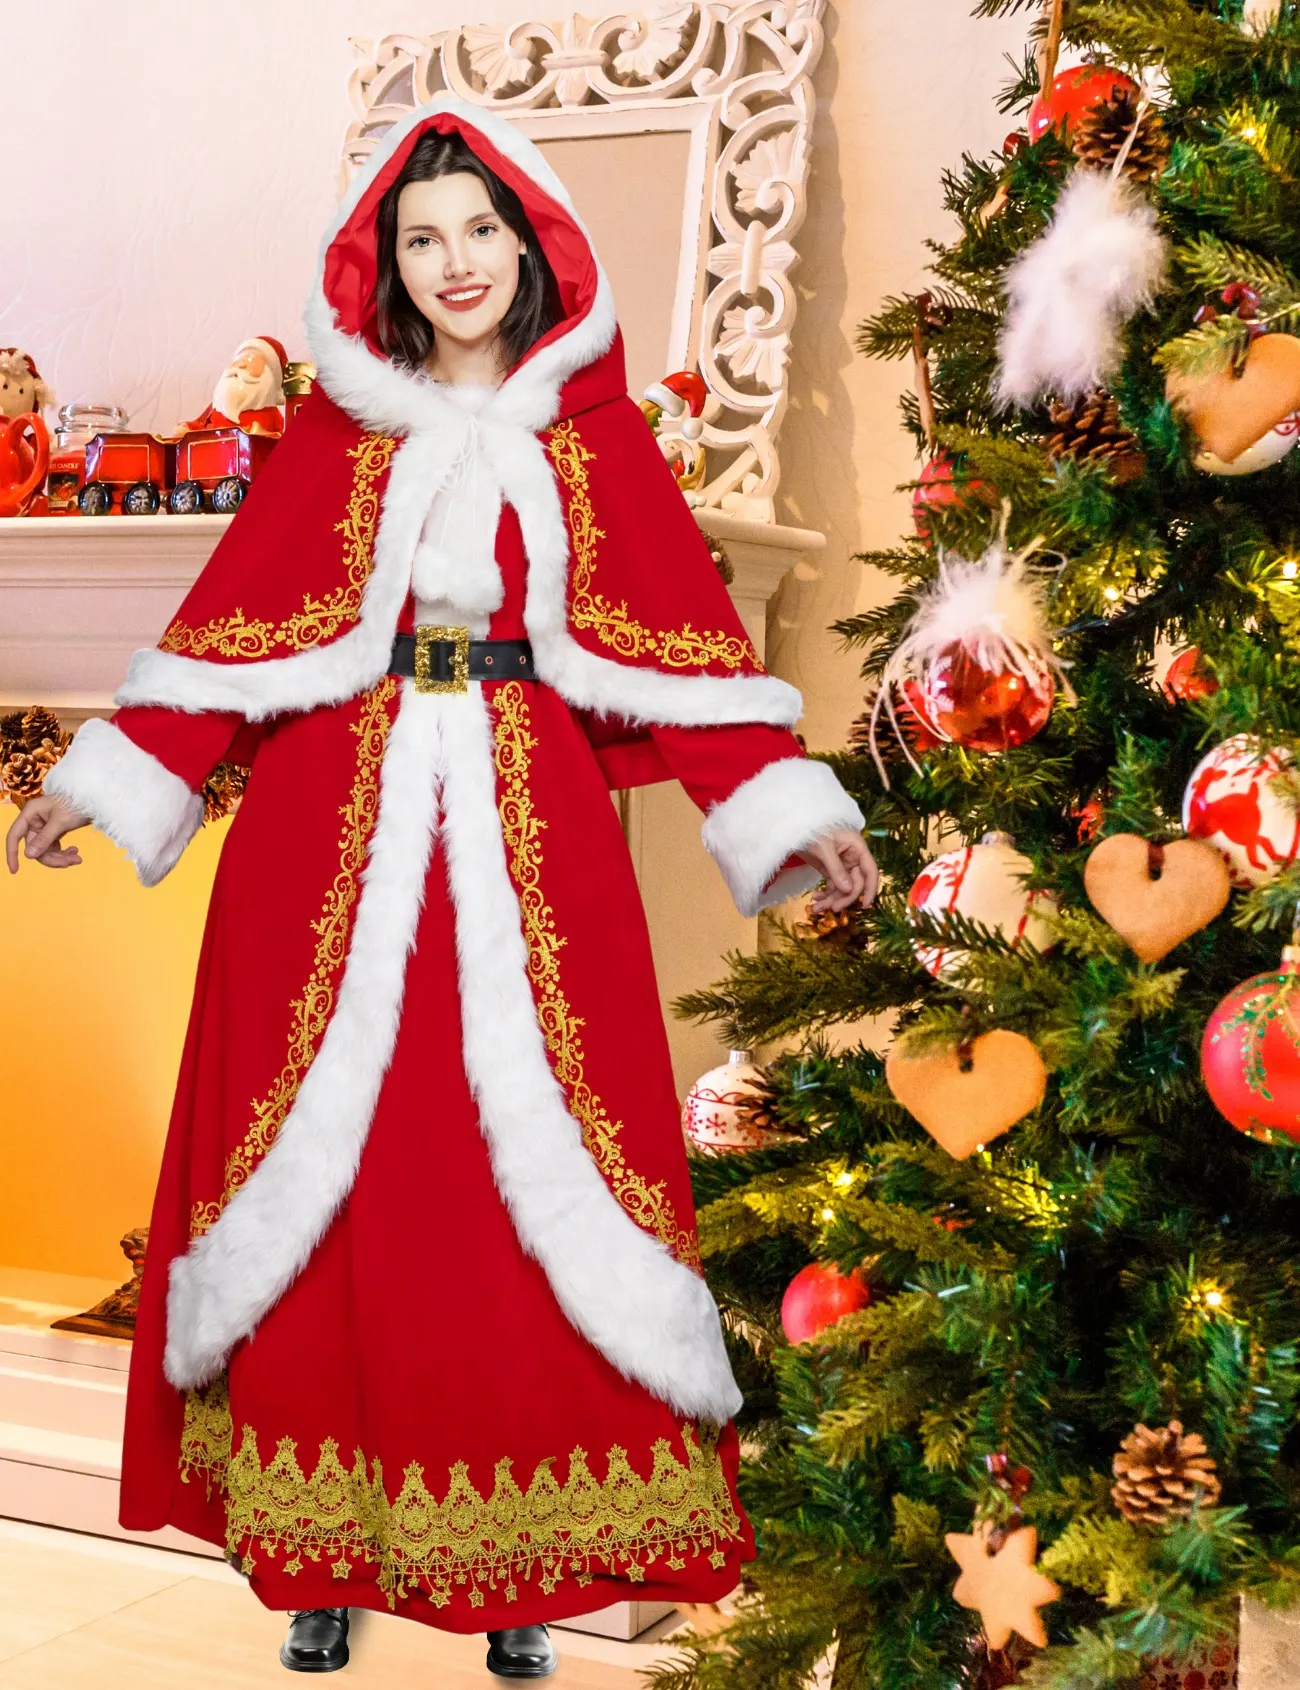 Damen rotes Weihnachtskleid Kostüm Weihnachtsmann Kostüm mit Polyestermantel und Zubehör für Erwachsene